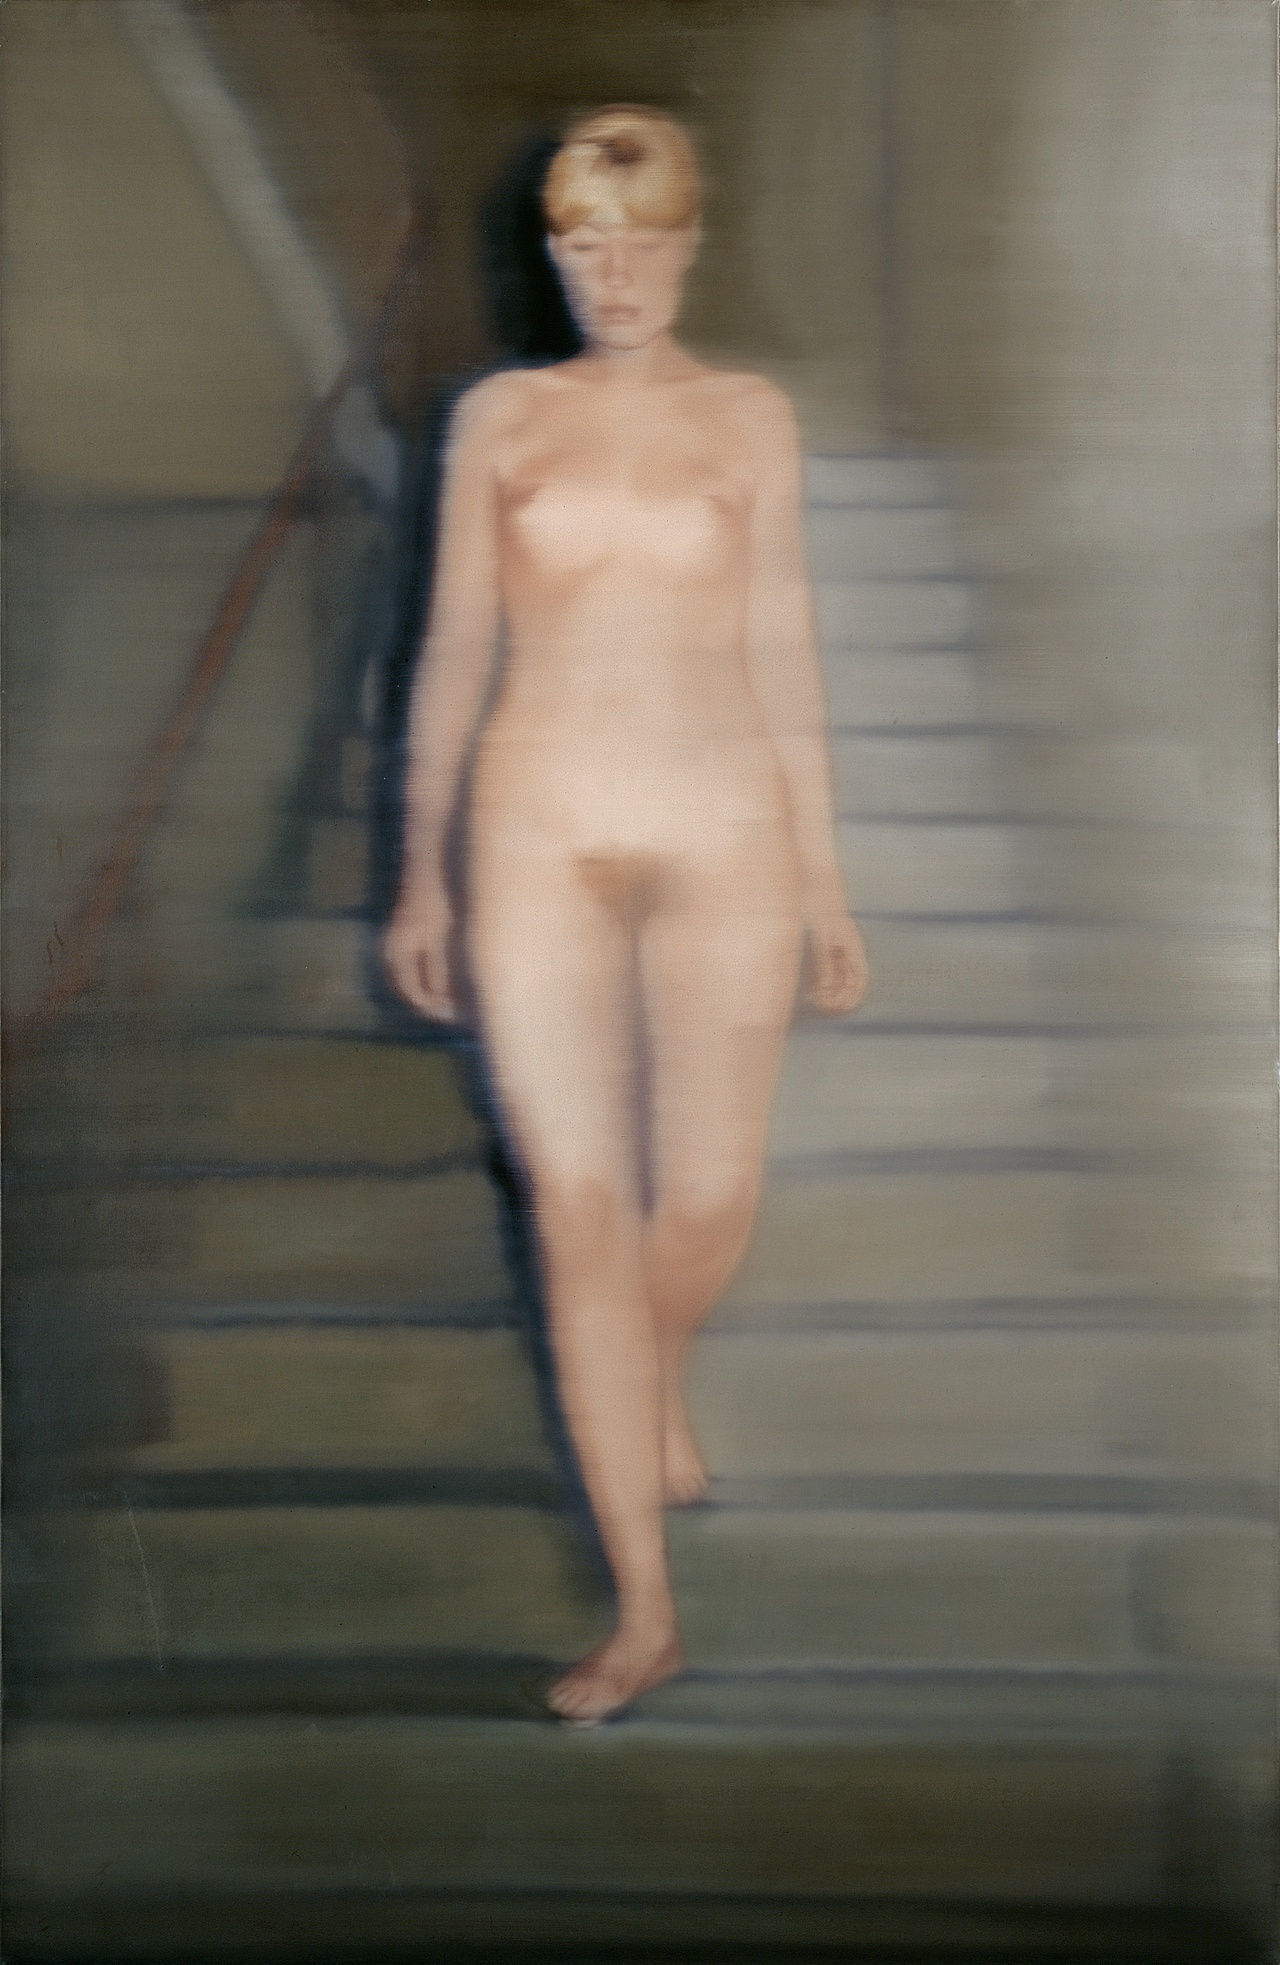 Gerhard Richter, “Ema (Akt auf einer Treppe),” 1966